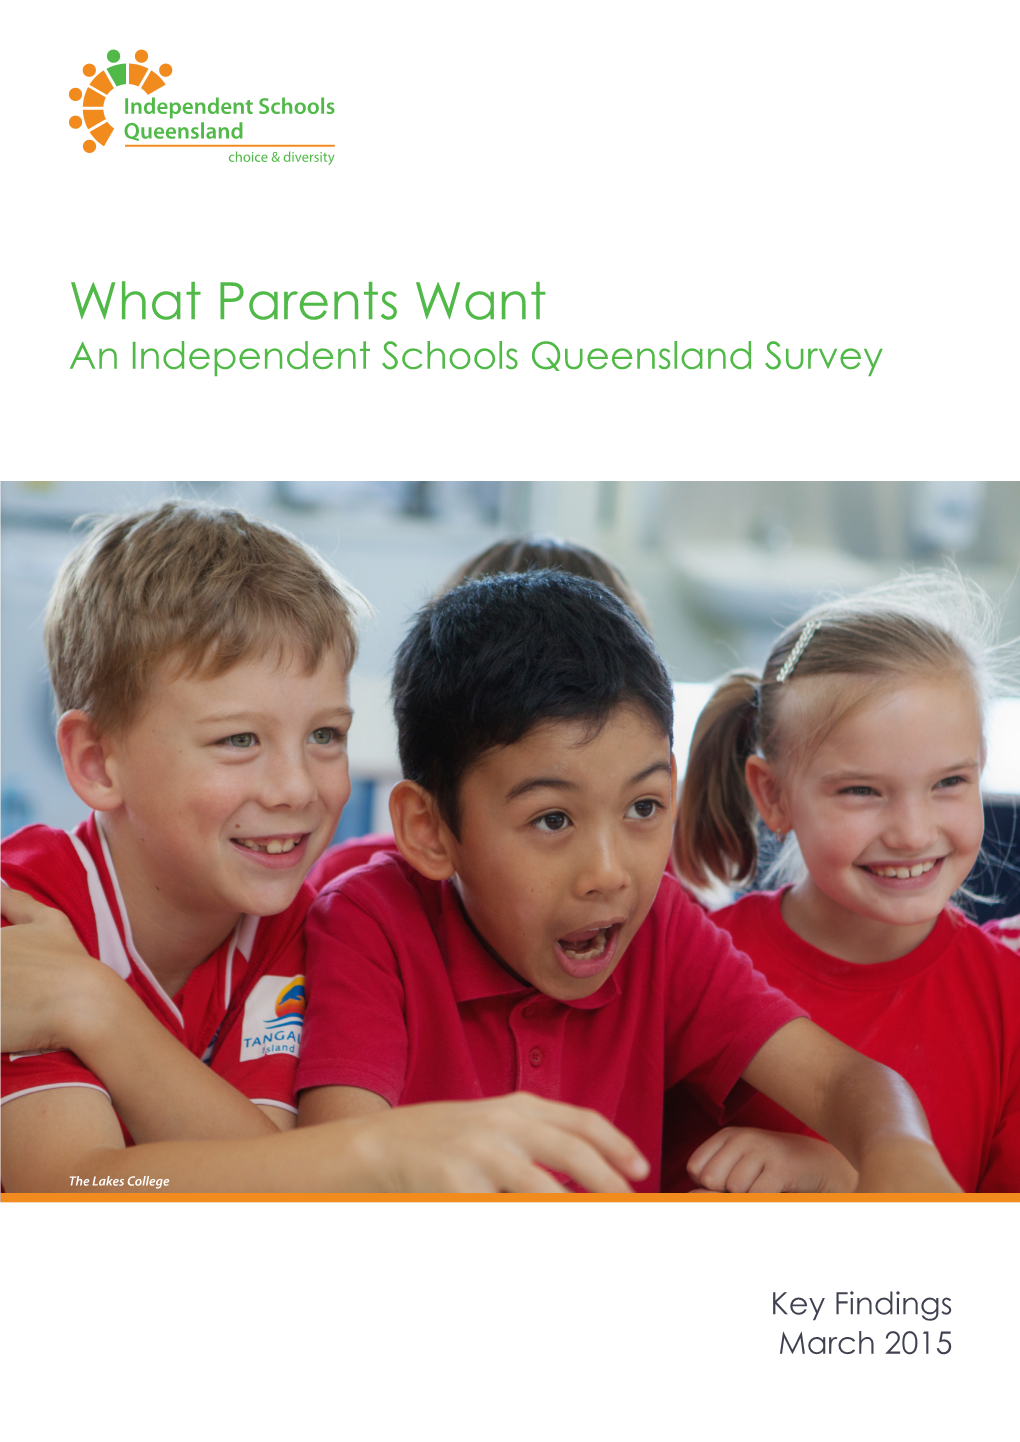 What Parents Want Survey Key Findings